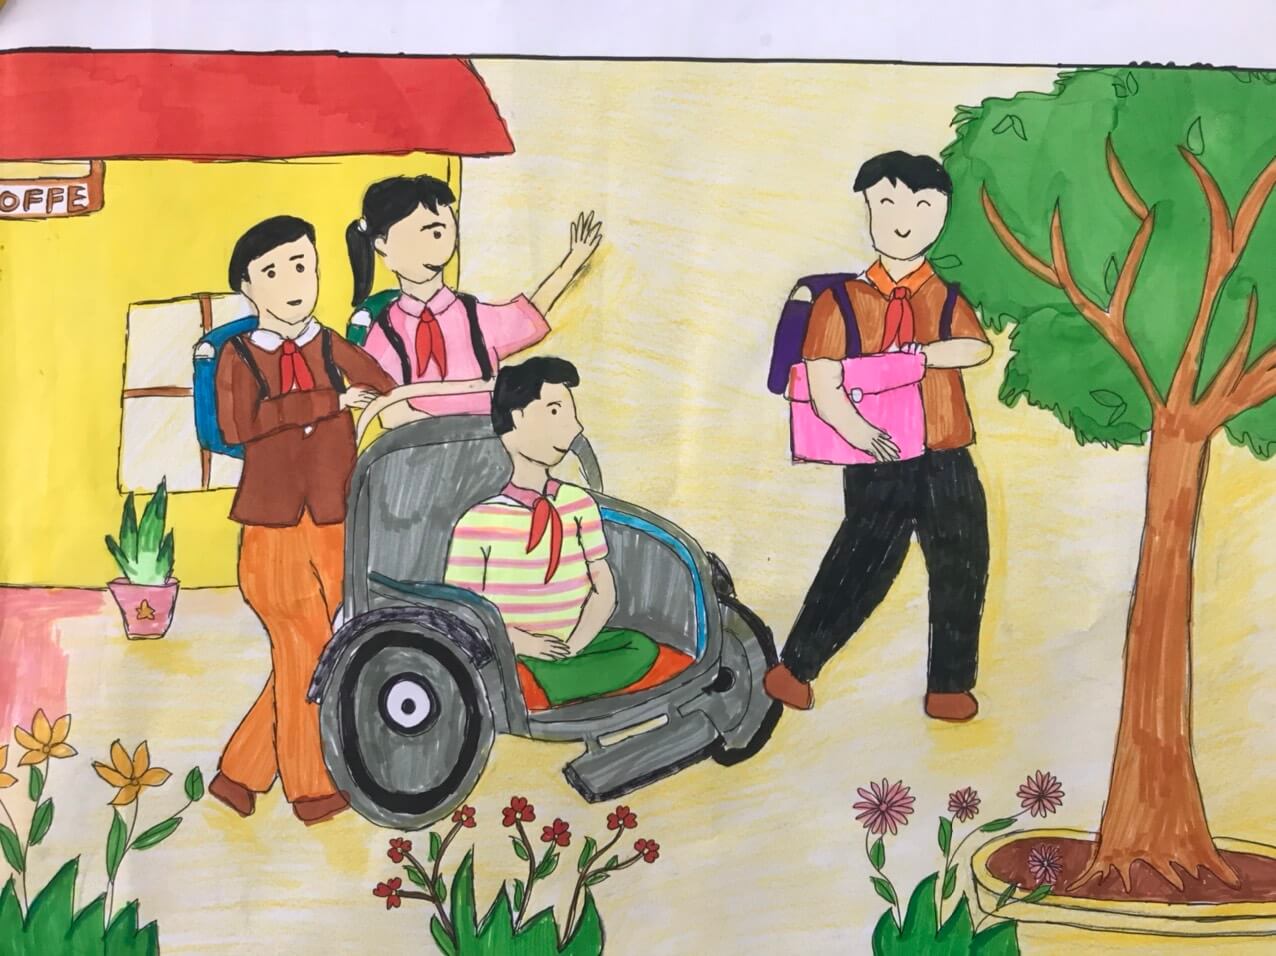 Tranh vẽ thiếu nhi Việt Nam giúp đỡ người khuyết tật